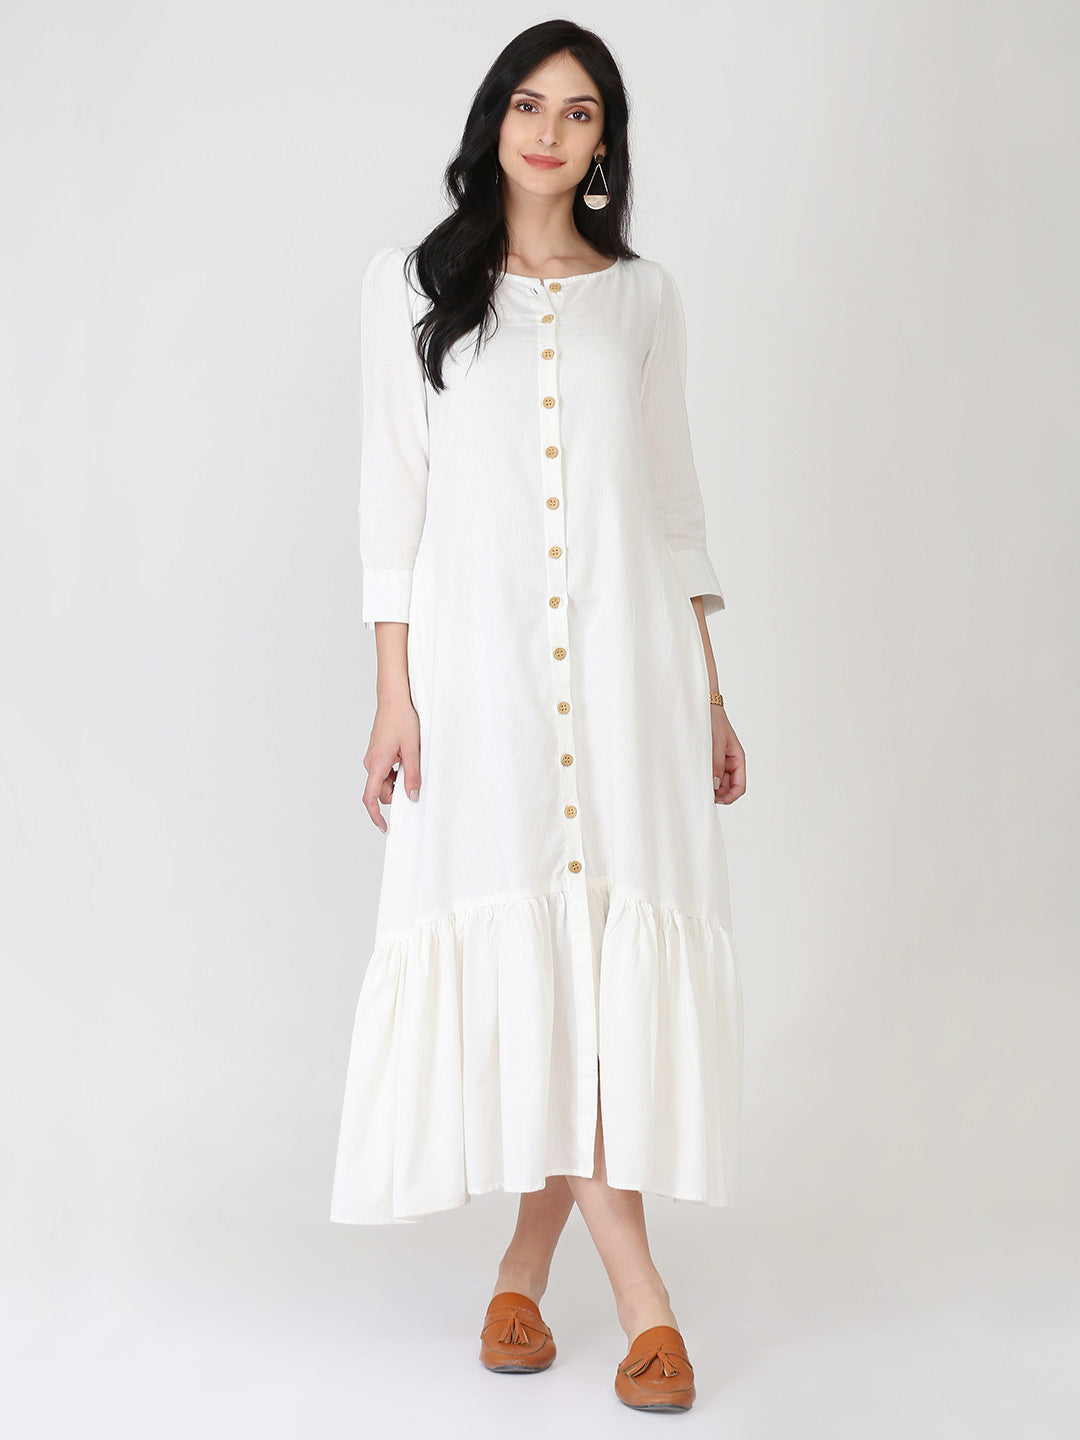 White Cotton Linen Button Down Dress